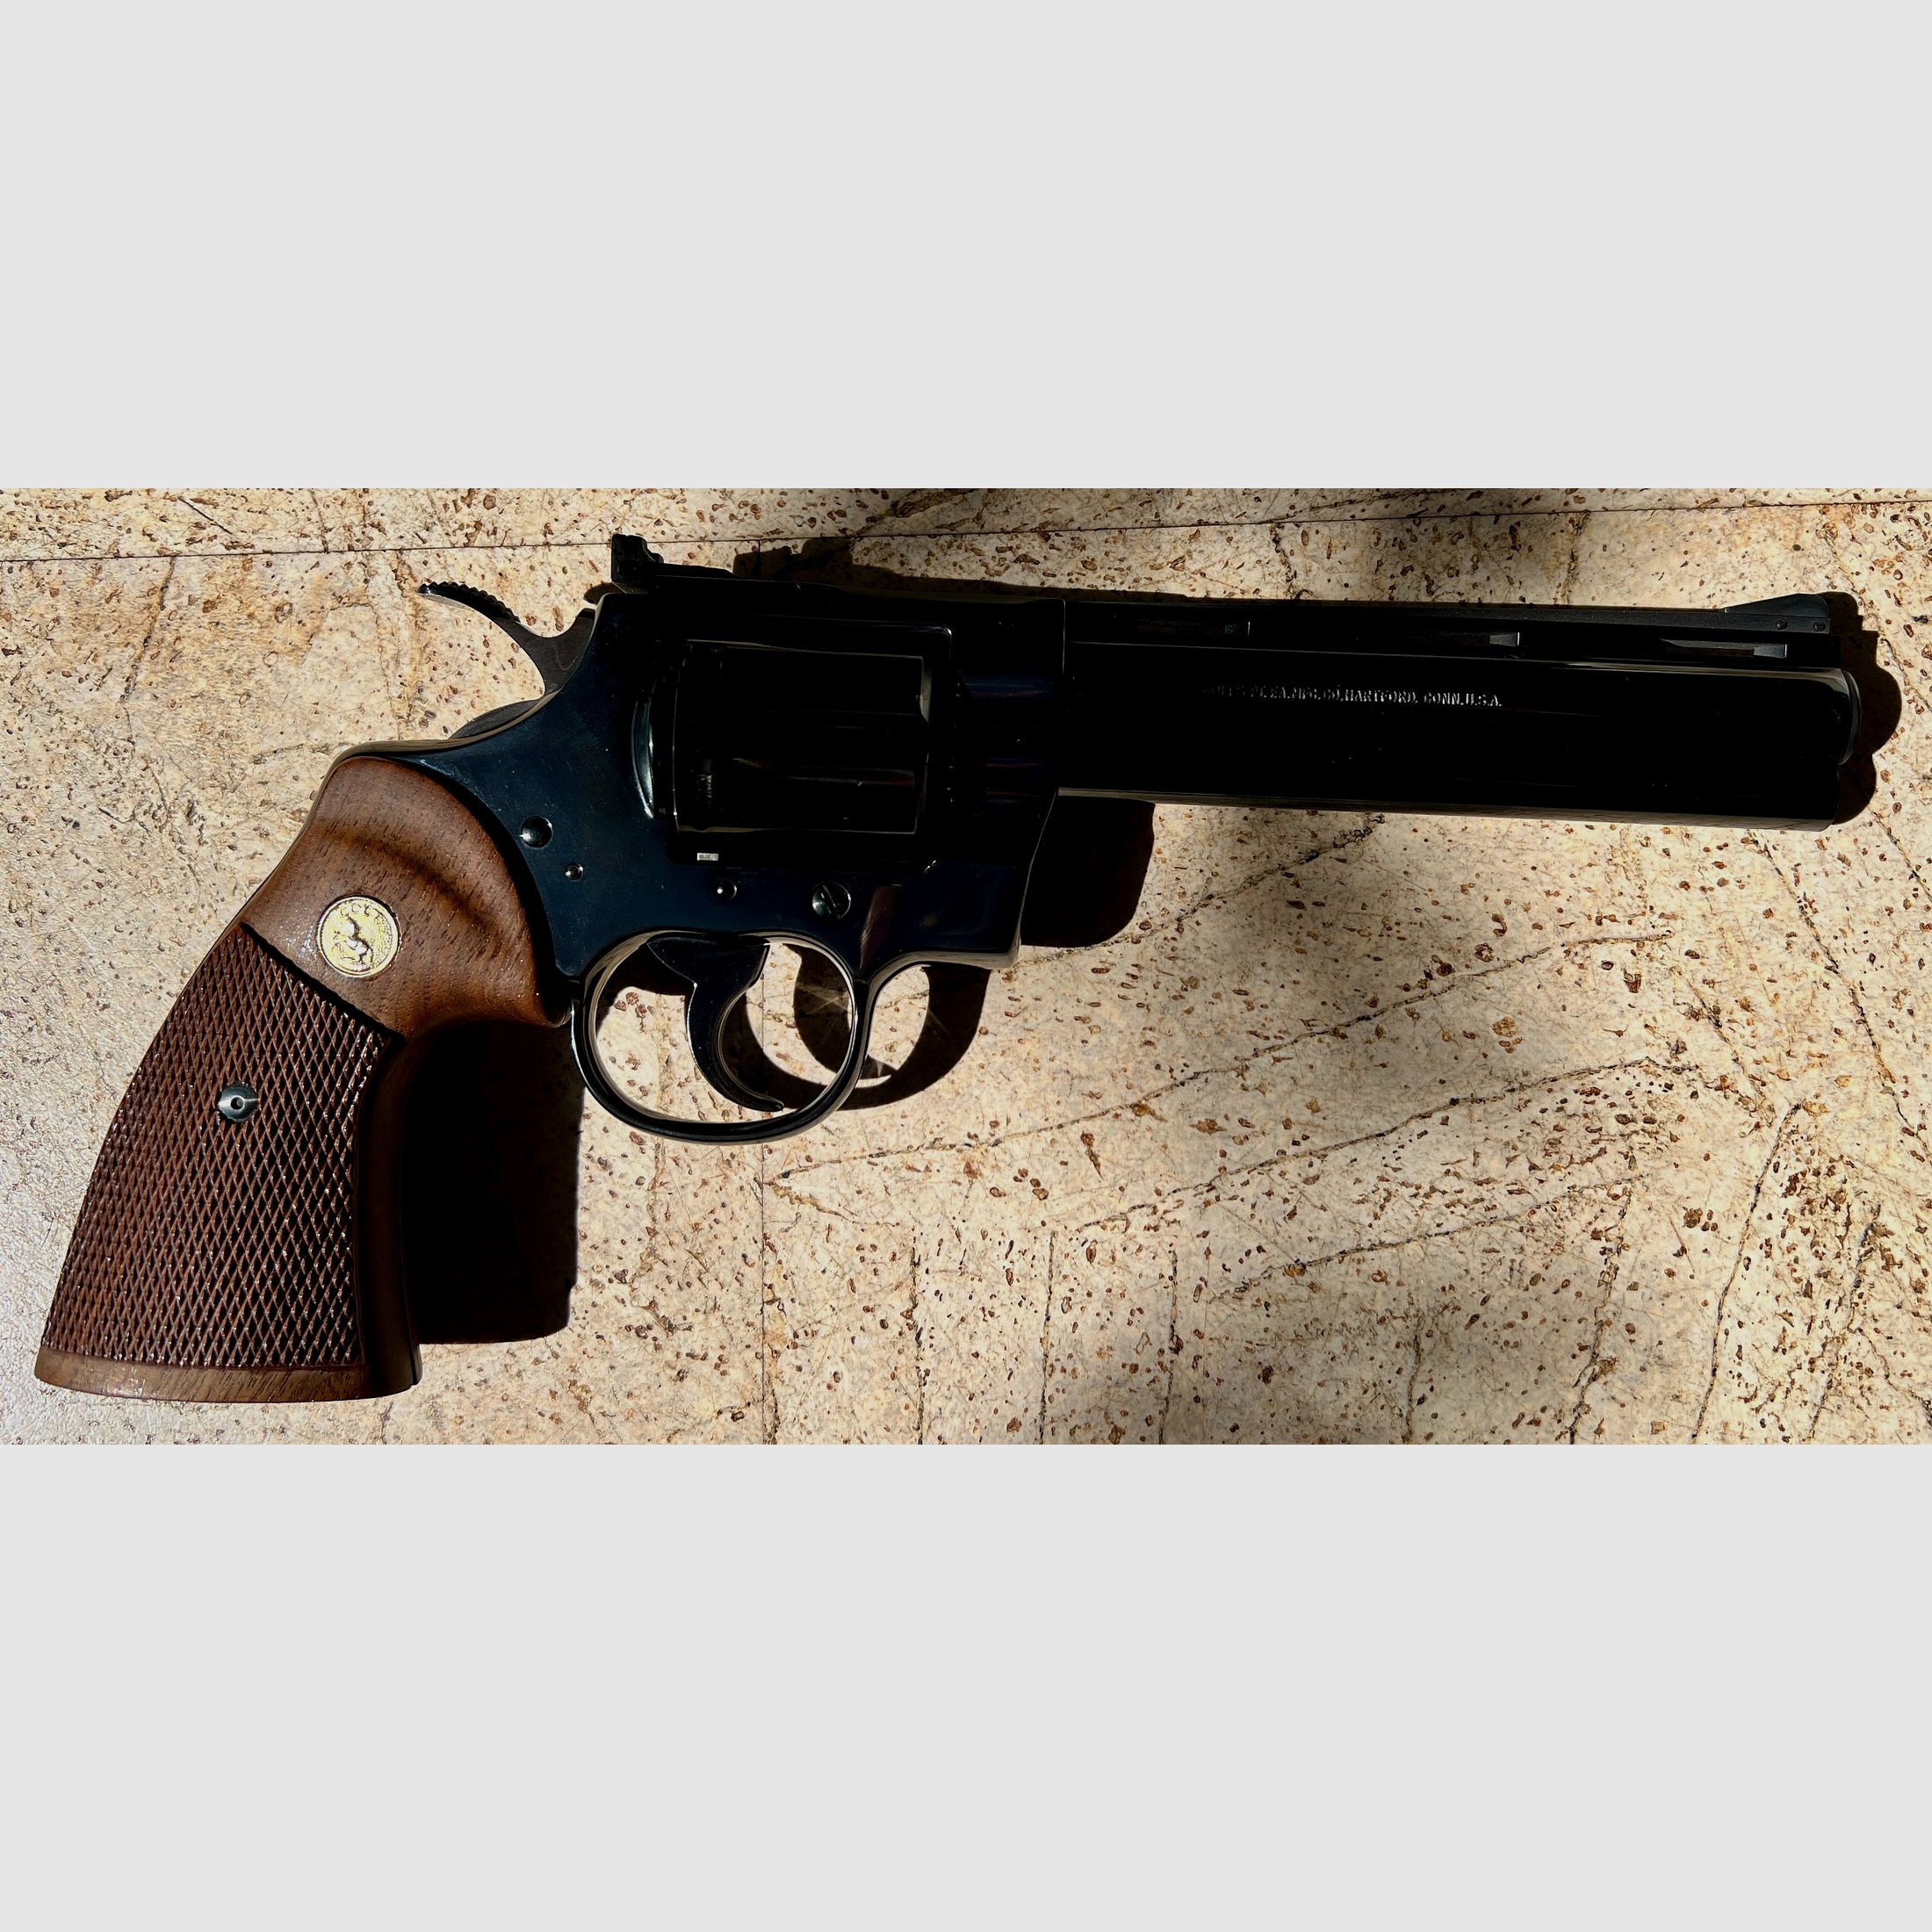 Colt Python 6"  Rarität;  Originale Colt  Fertigung,  (kein Smith&Wesson 686 Target Champion, Club 30, Taurus, Korth, Manurhin, sondern DAS Original!)